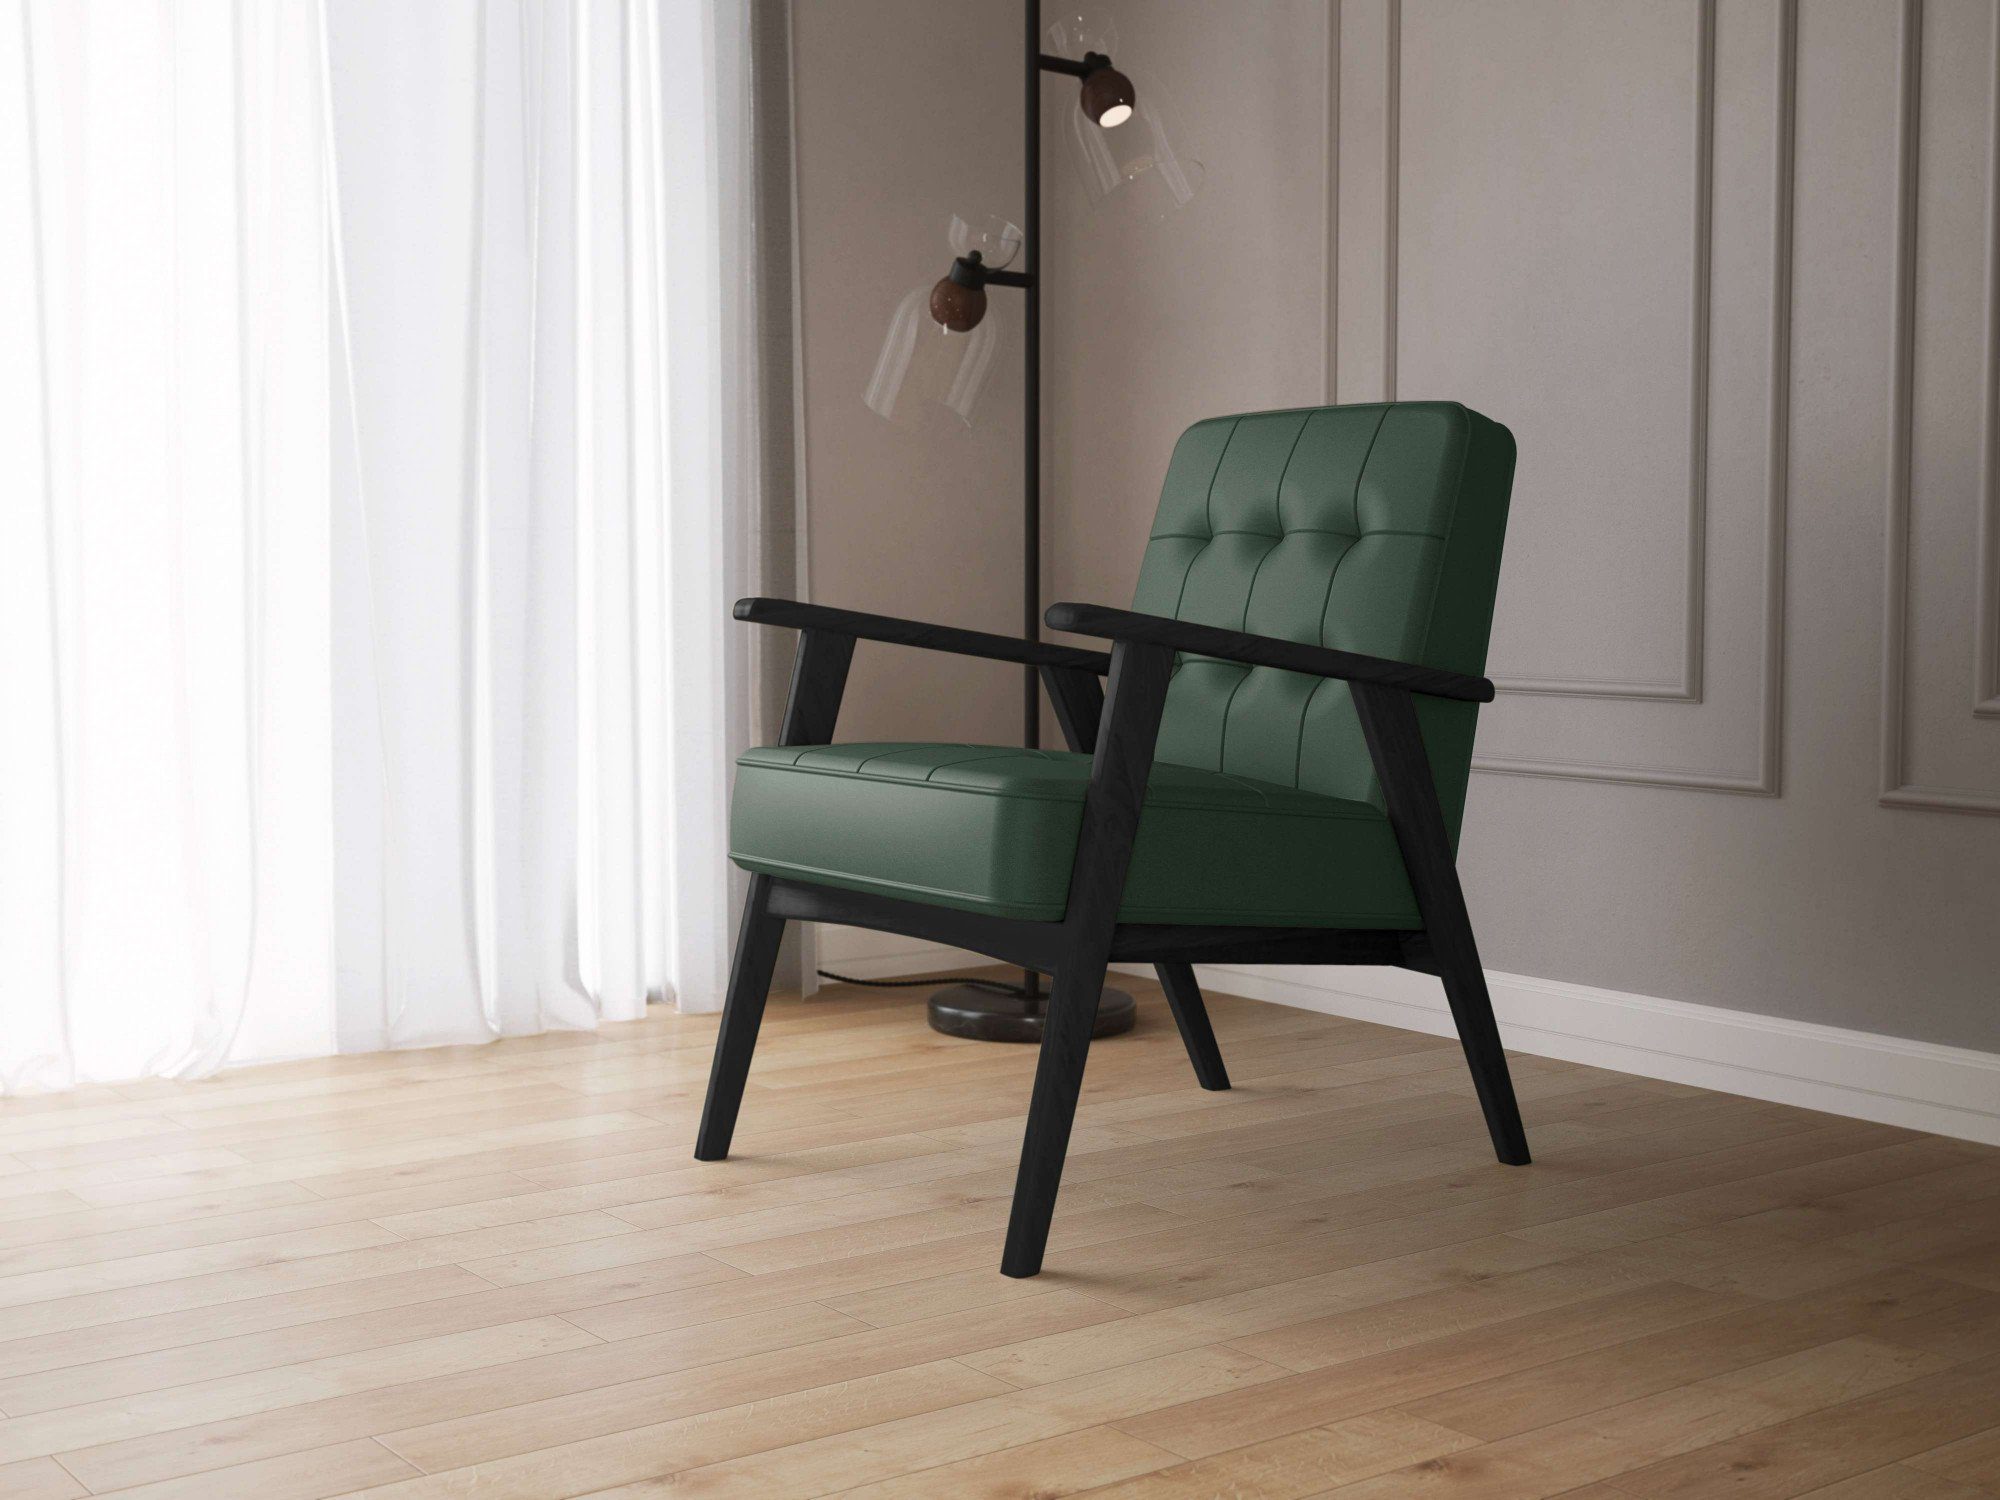 andas Sessel Mayfly aus Lederoptik, Design in Massivholz, für Sitzkomfort Alvared, mit edles hohen Wellenunterfederung